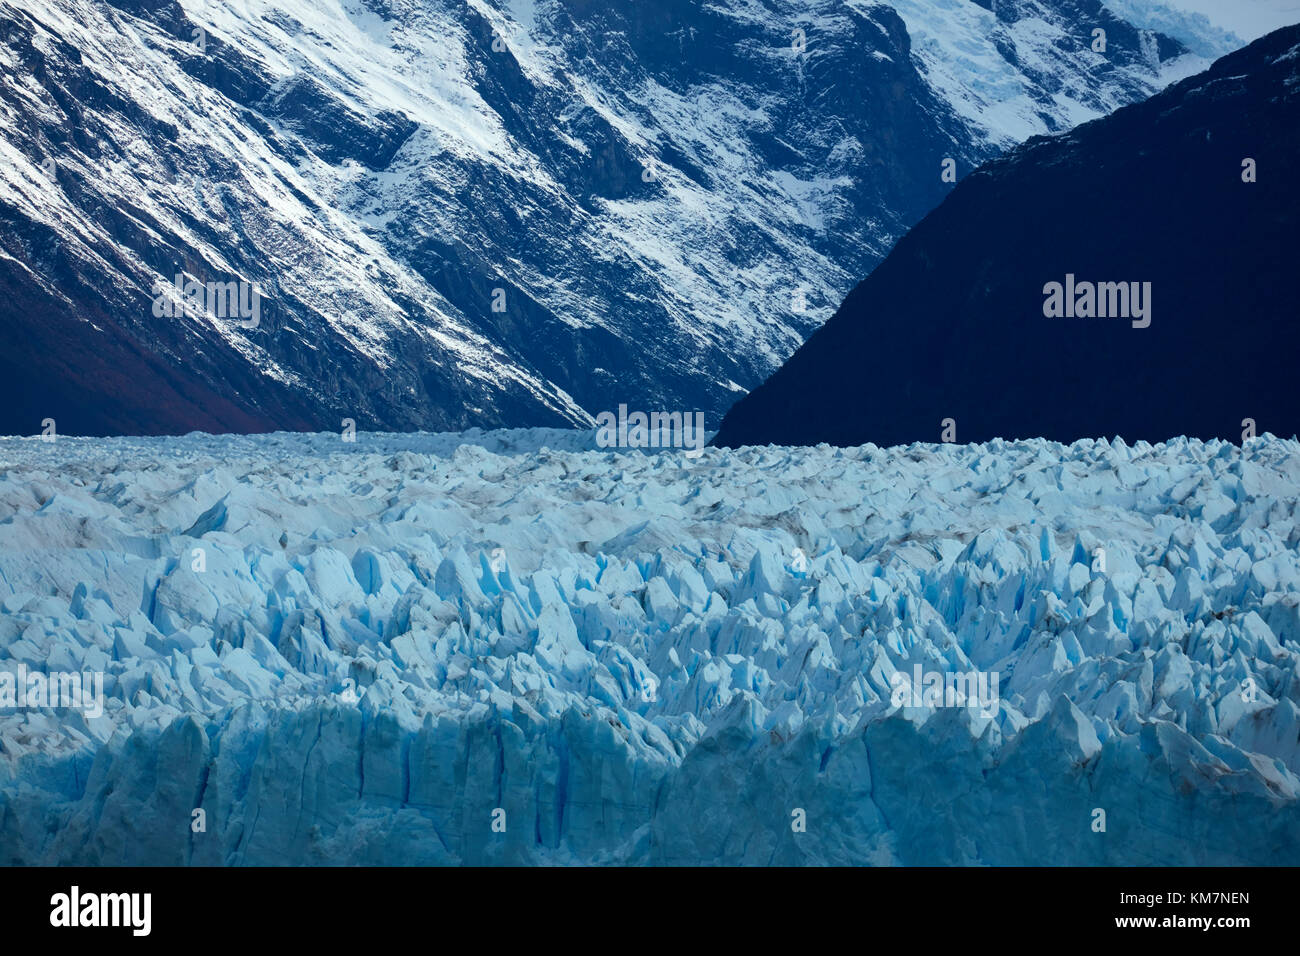 Terminal face of Perito Moreno Glacier, Parque Nacional Los Glaciares (World Heritage Area), Patagonia, Argentina, South America Stock Photo